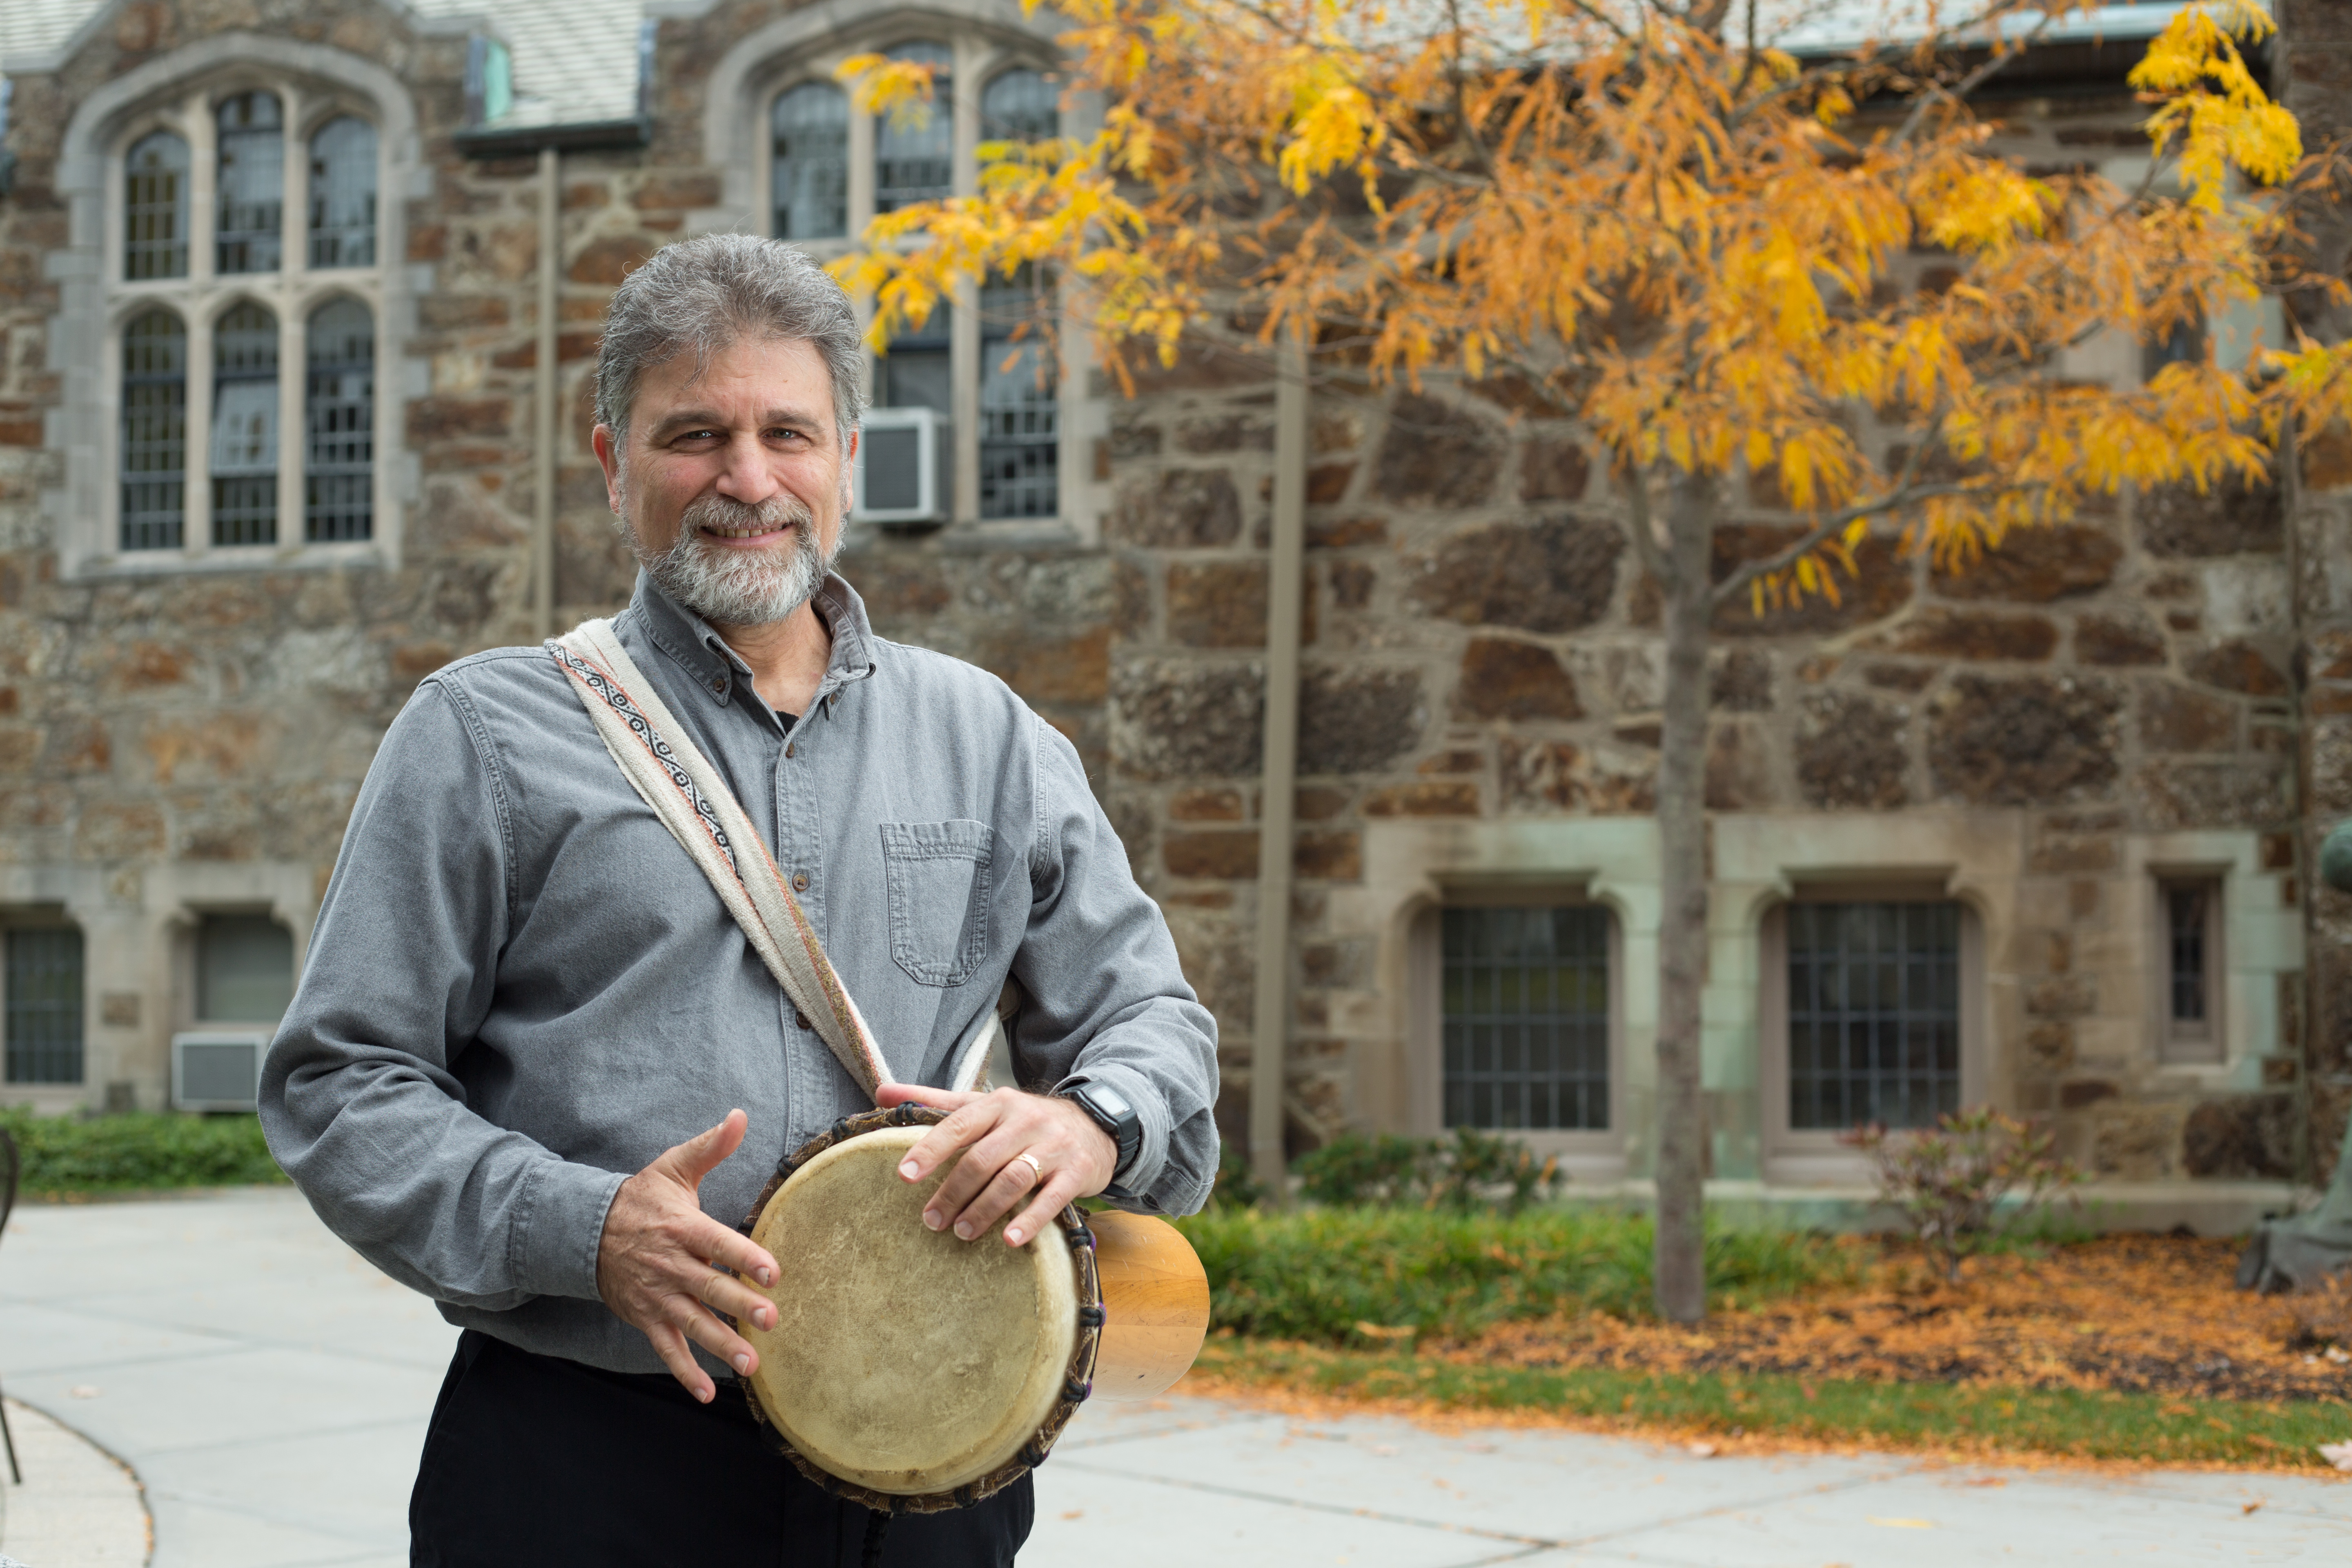 Kossak holds a drum on campus.